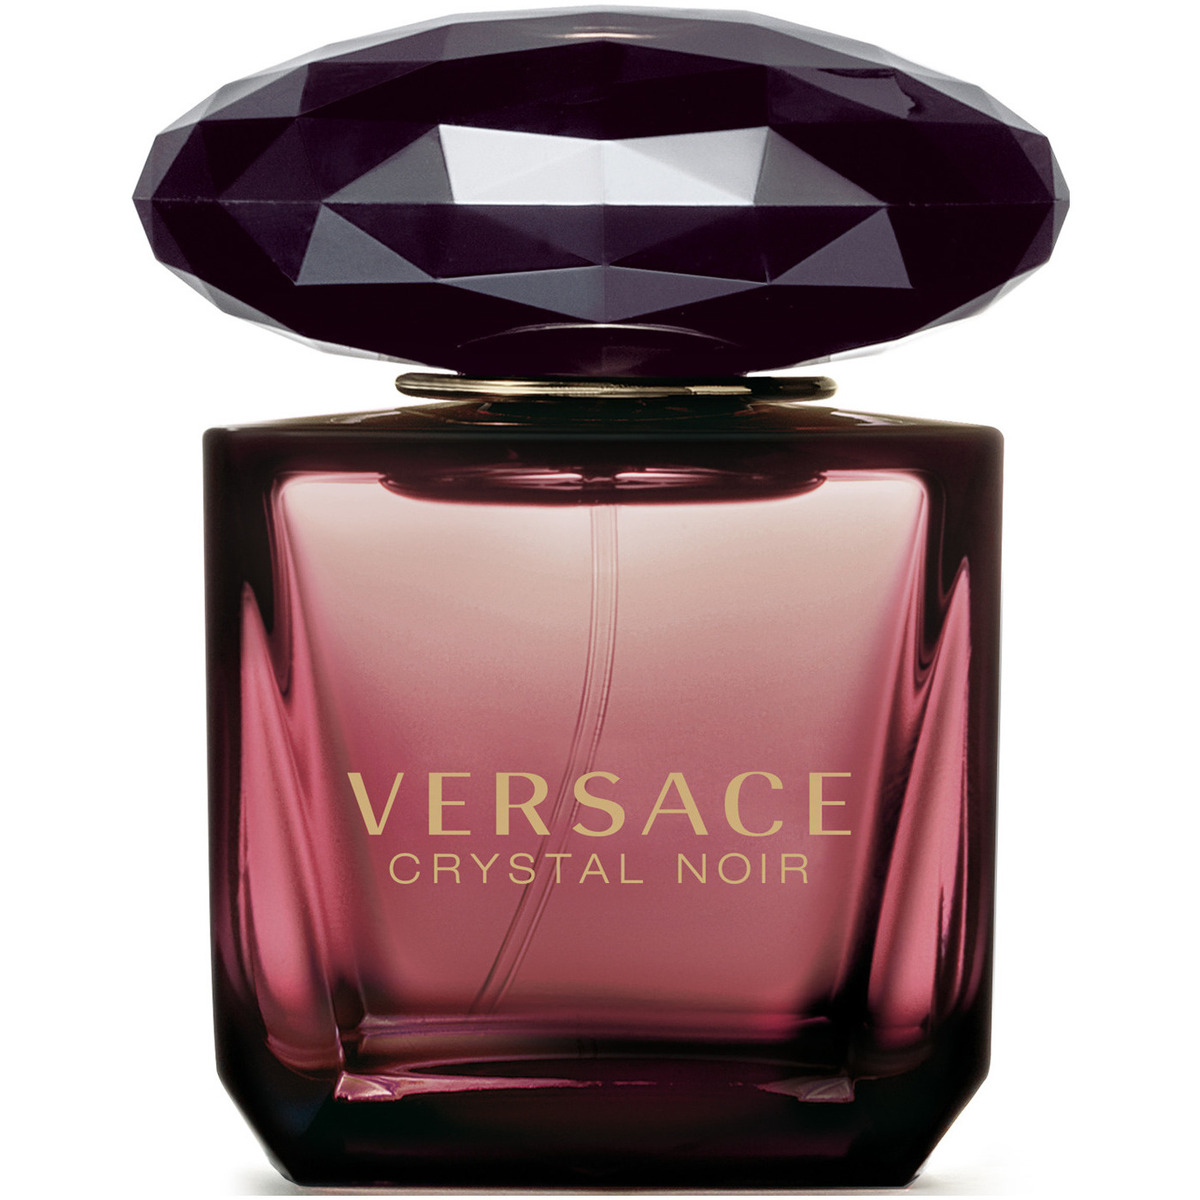 Beauté Femme Cologne Versace Crystal Noir - eau de toilette - 90ml - vaporisateur Veuillez choisir votre genre